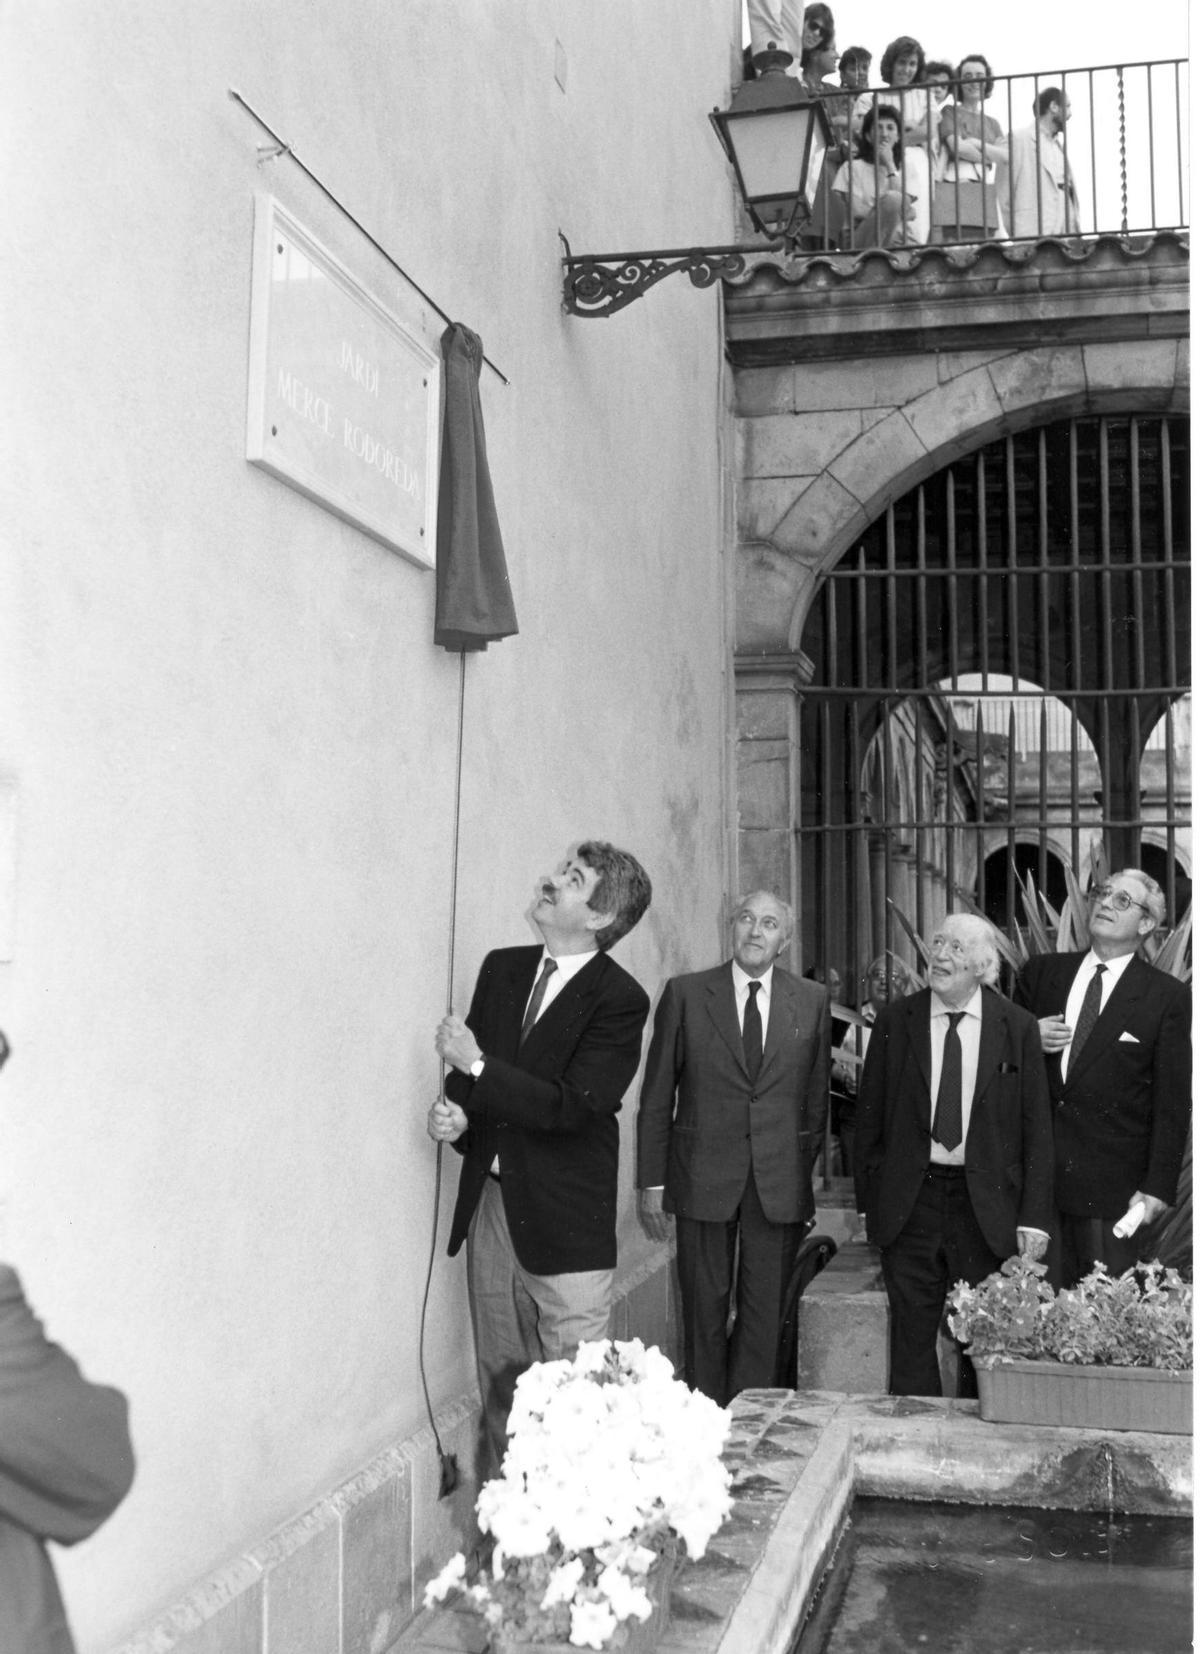 El alcalde Pasqual Maragall inaugurando en 1988 los jardines Mercè Rodoreda dentro de la sede del IEC, junto a Frederic Rahola, Ramon Aramon y Emili Giralt